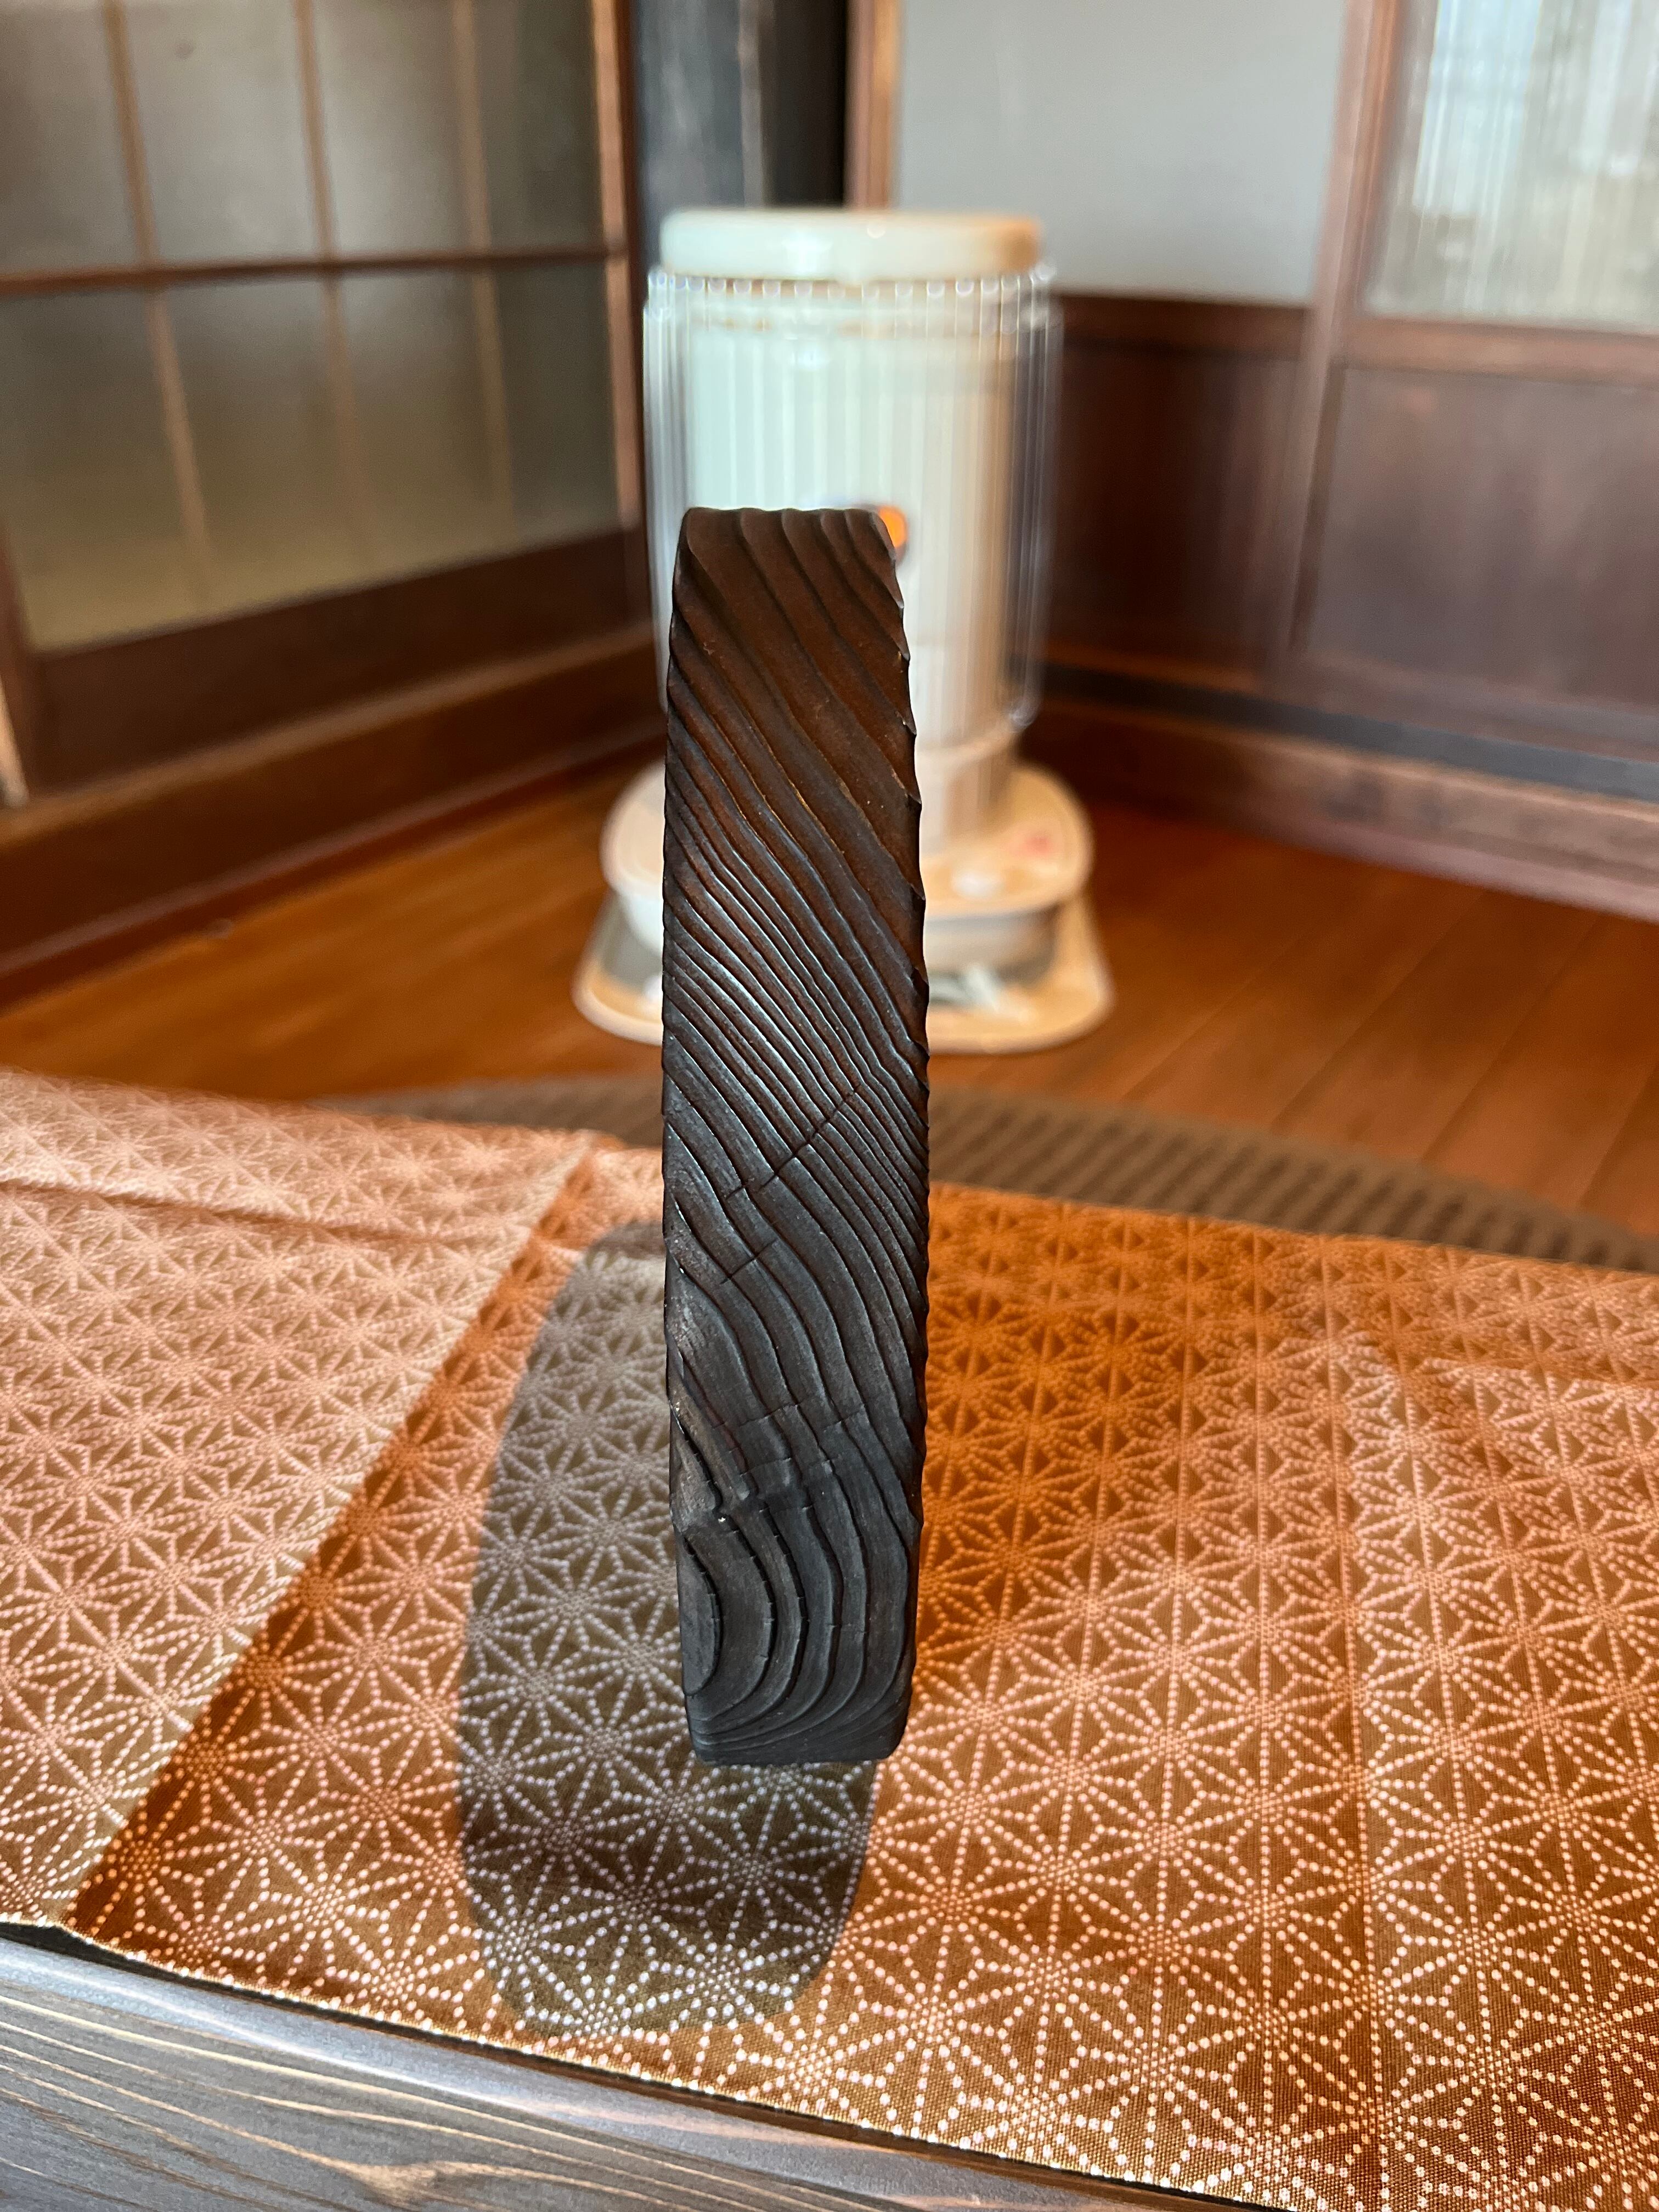 鍋敷き 飾り台 花台 木製 日本伝統うづくり技法 | SantaPa design